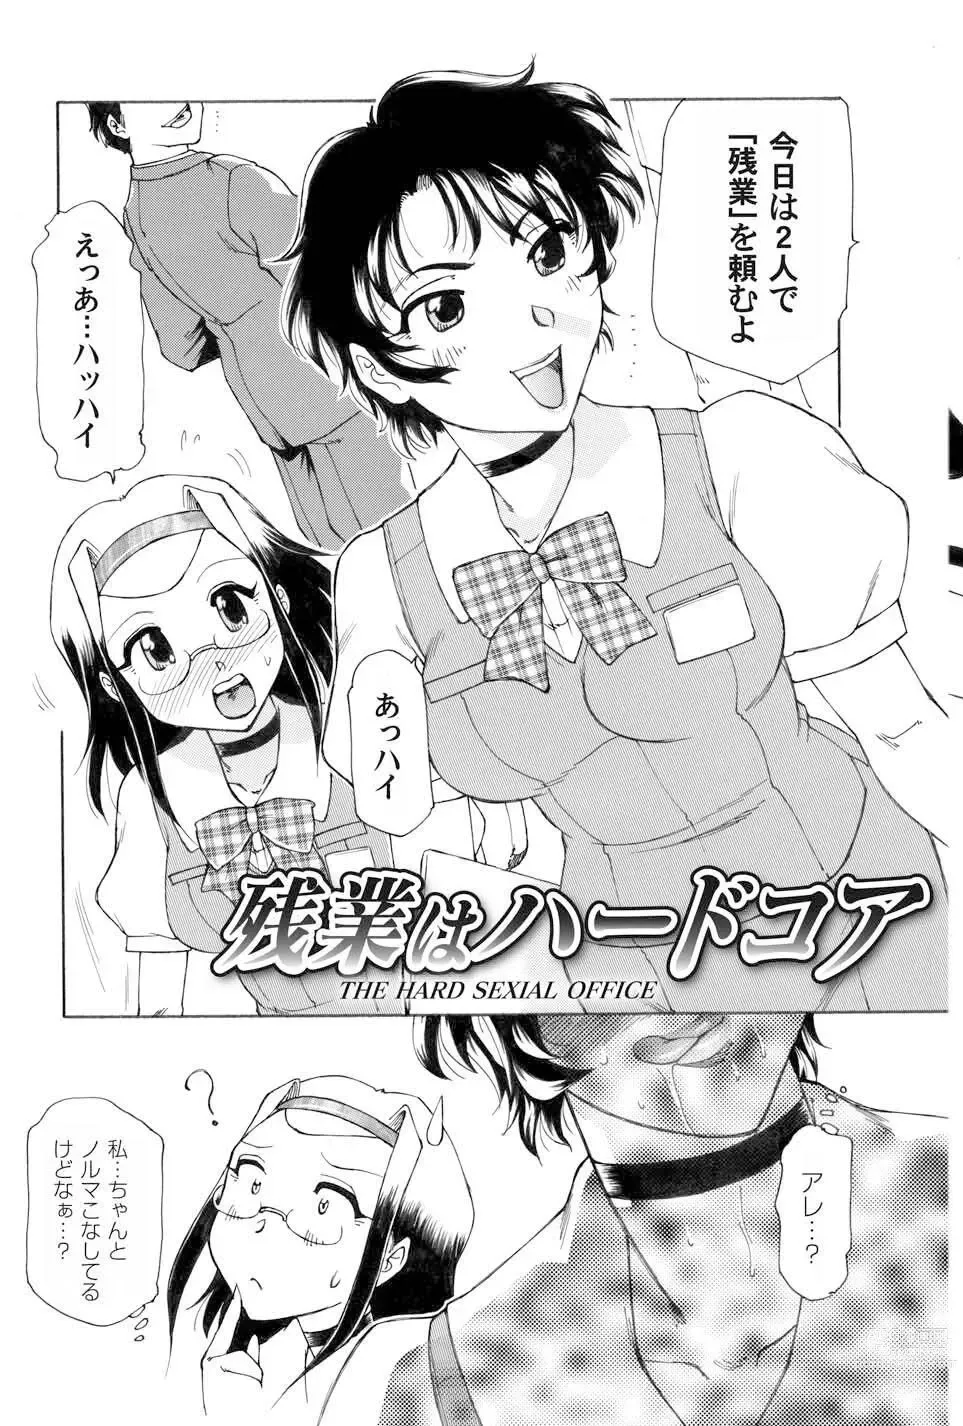 Page 5 of manga Kochira Soumubu Niku Houshika